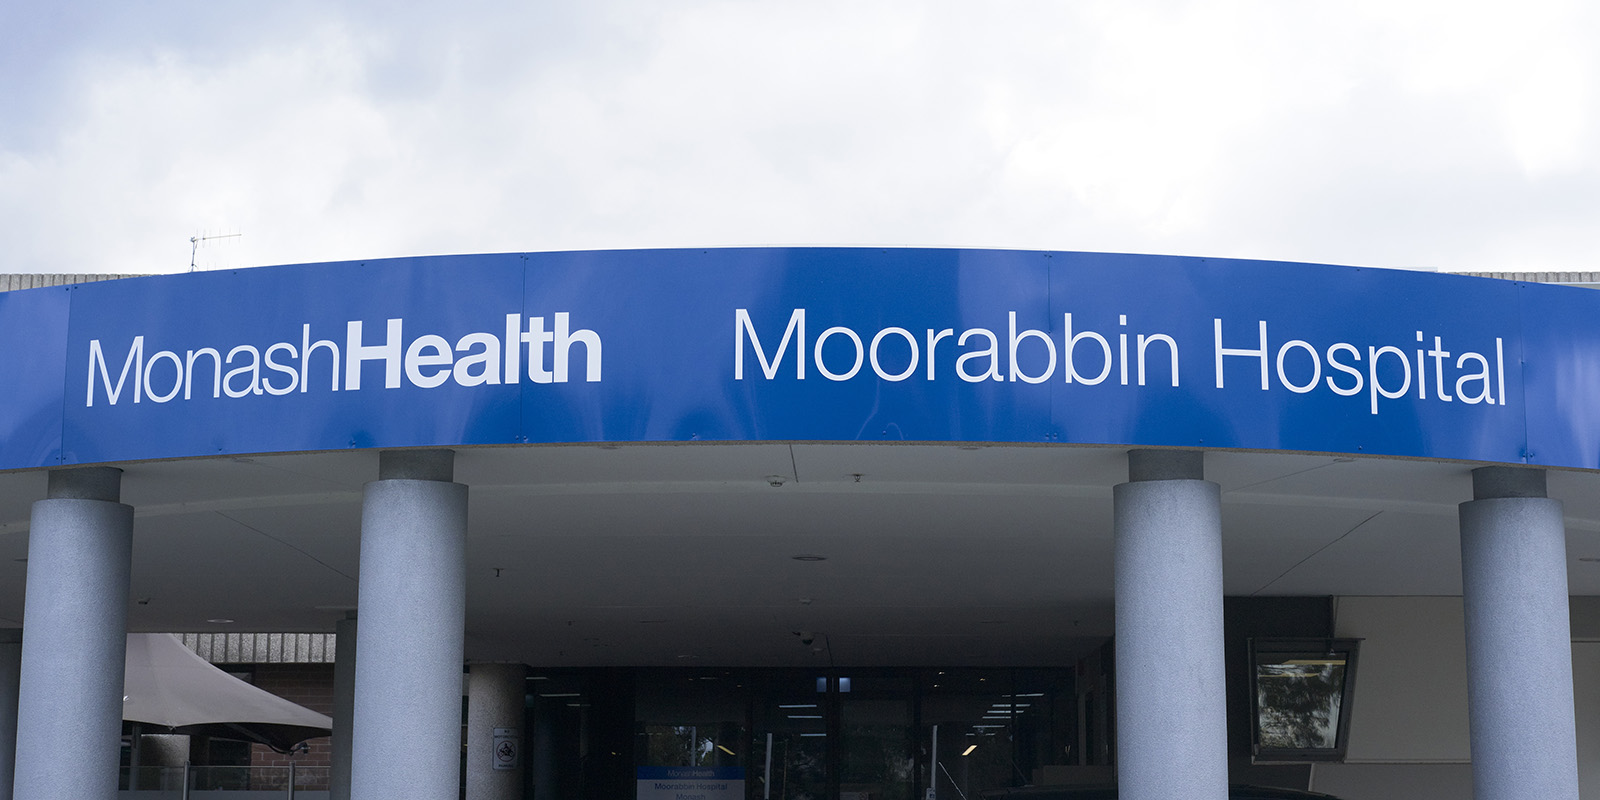 Moorabin Hospital